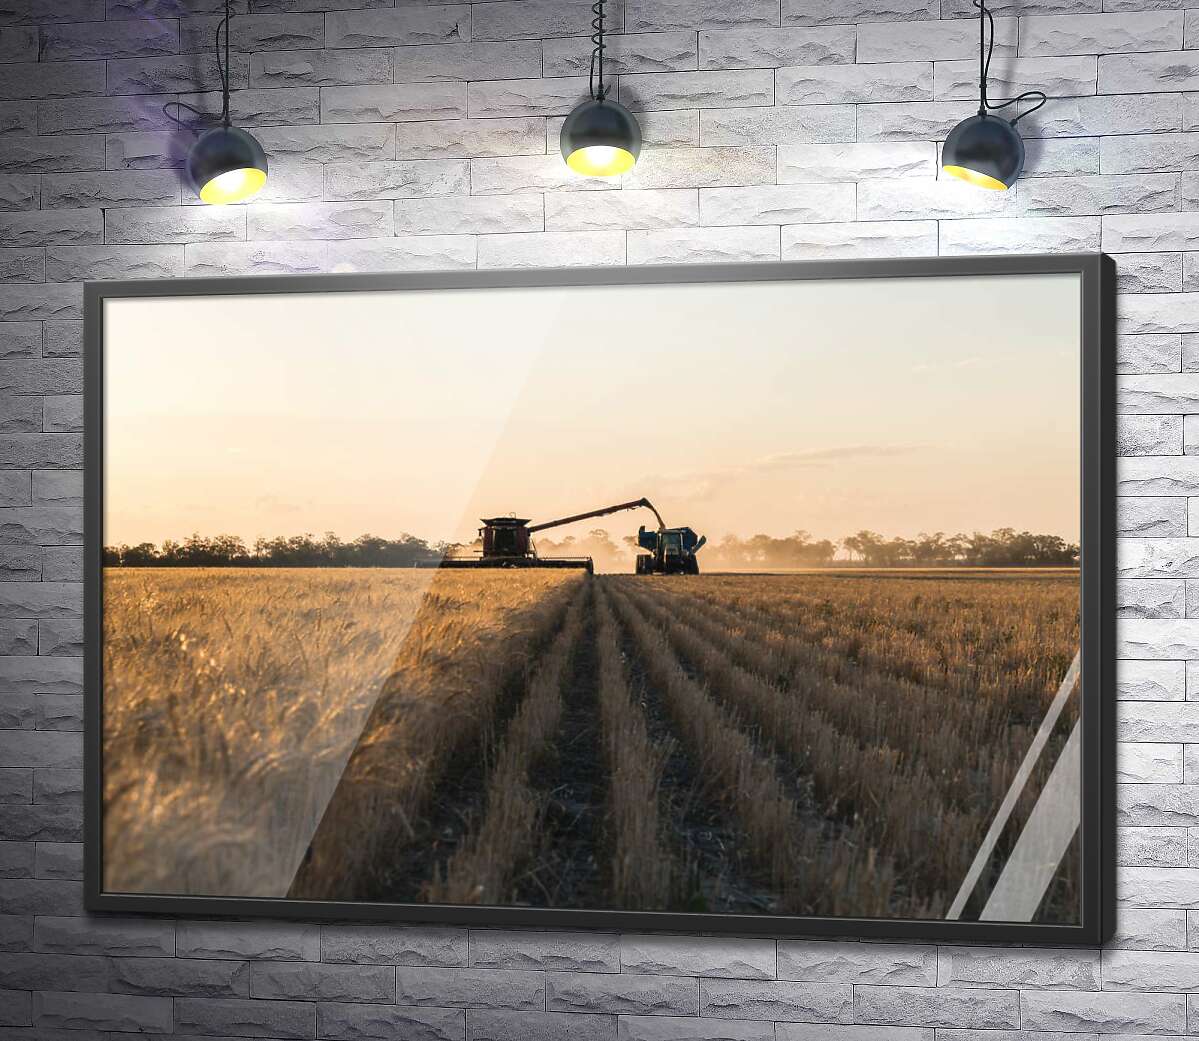 постер Комбайн и трактор в поле пшеницы